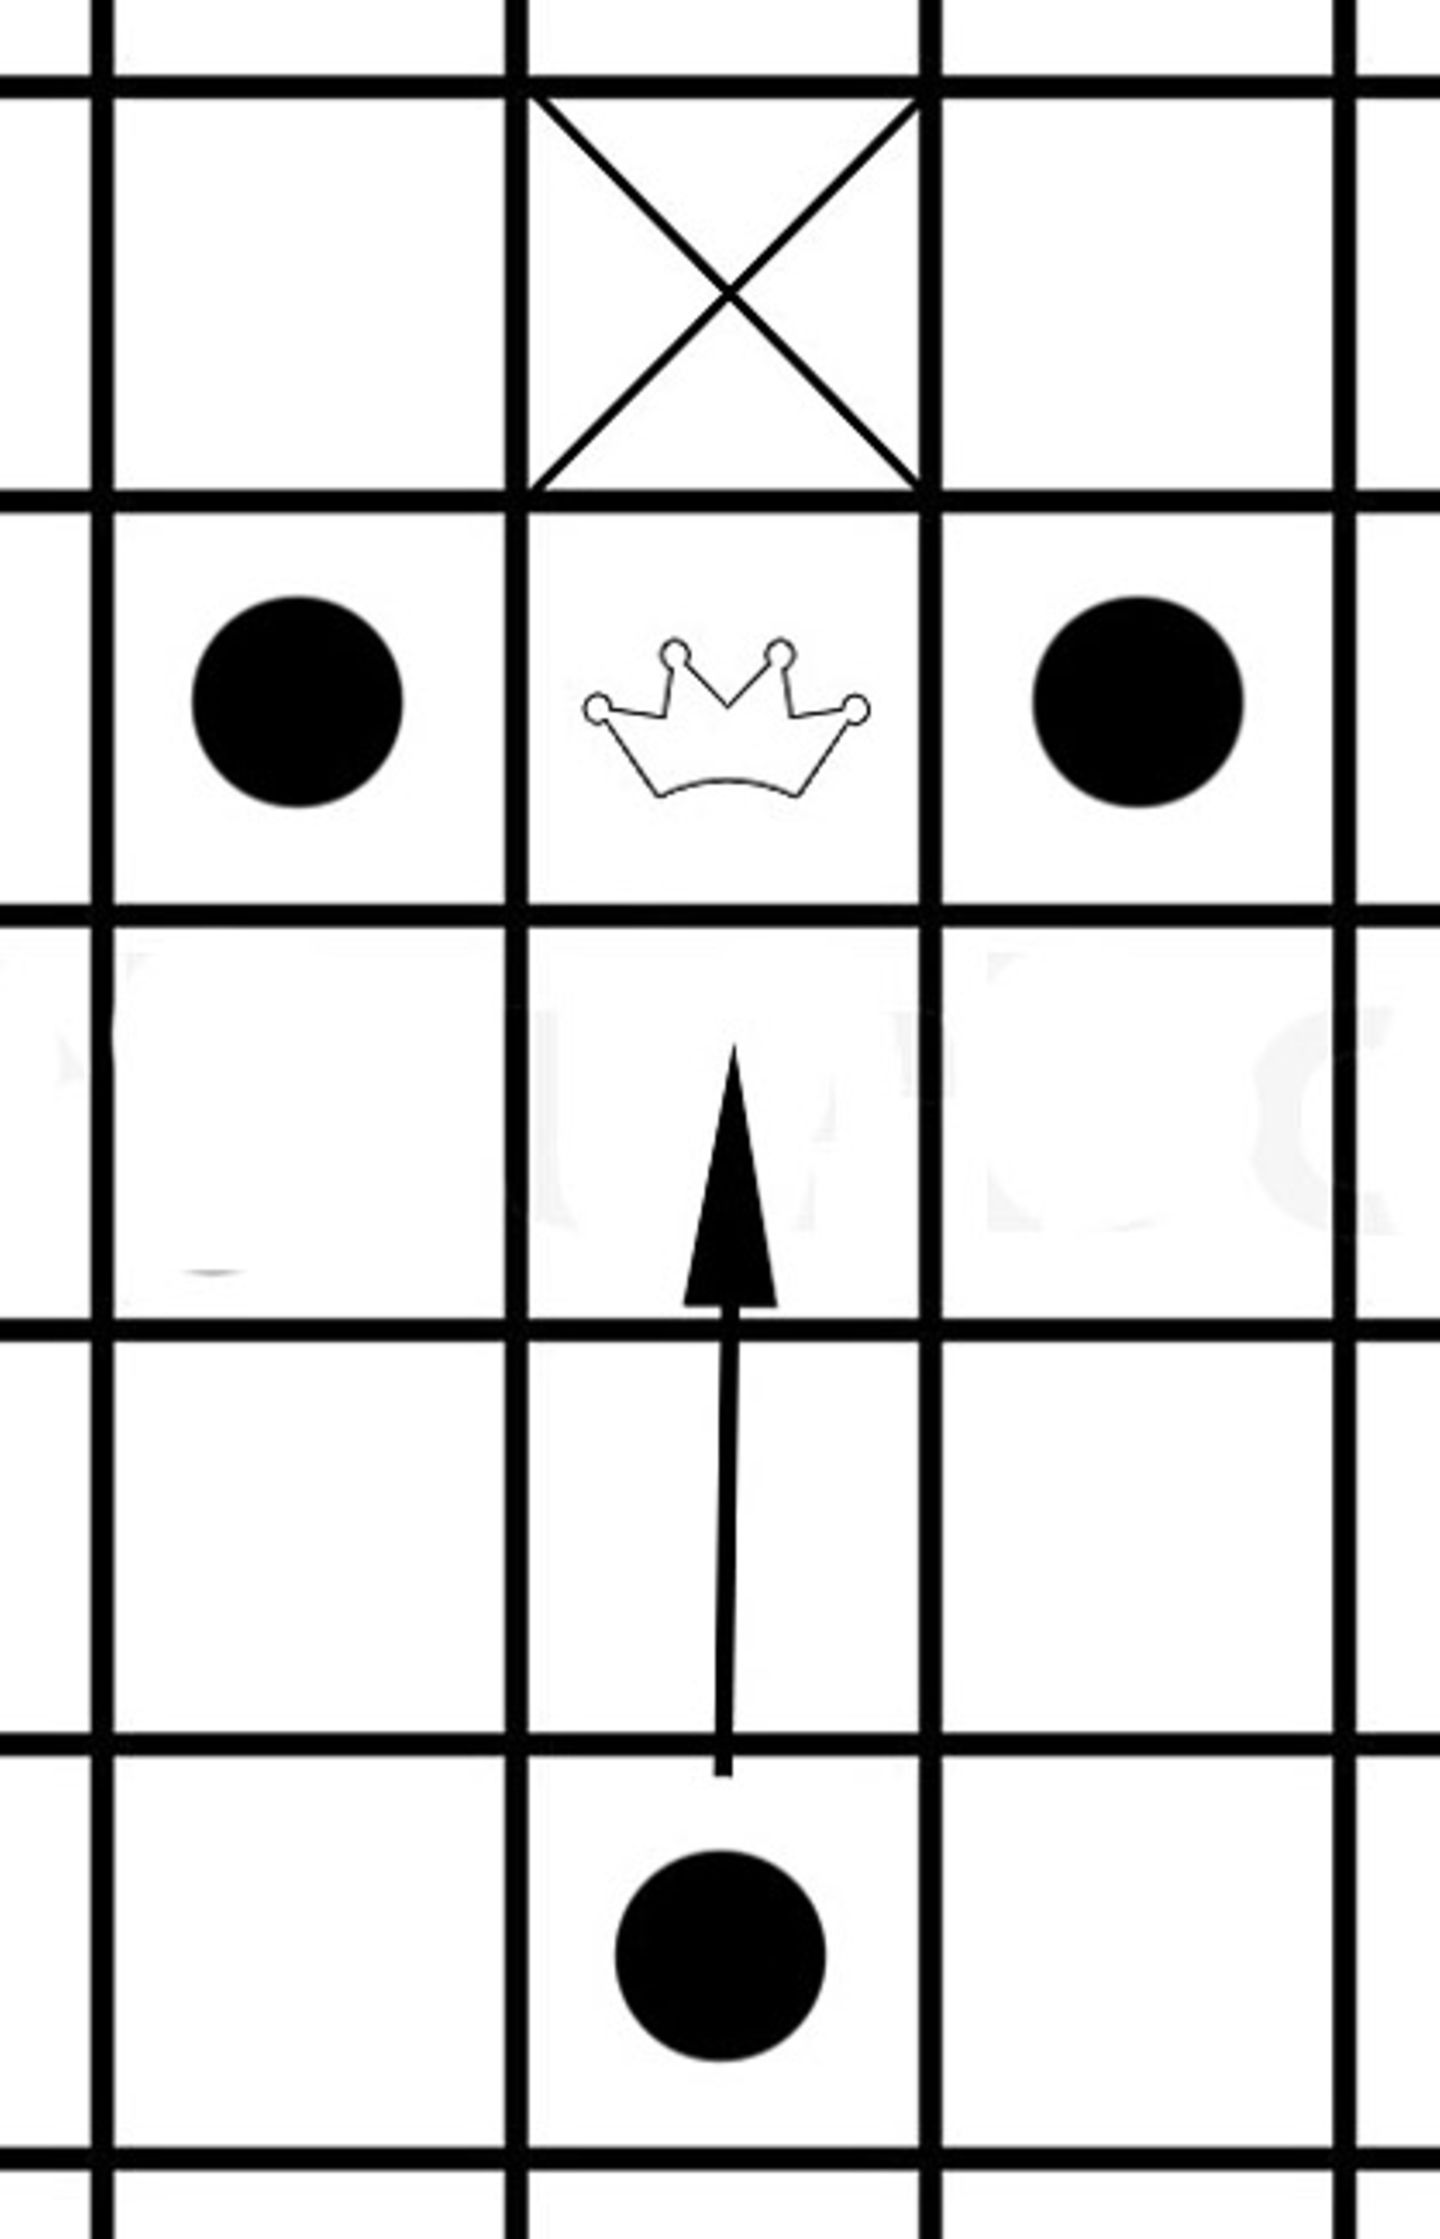 Spiel: Wikingerschach - Einfach erklärt - Bild 8